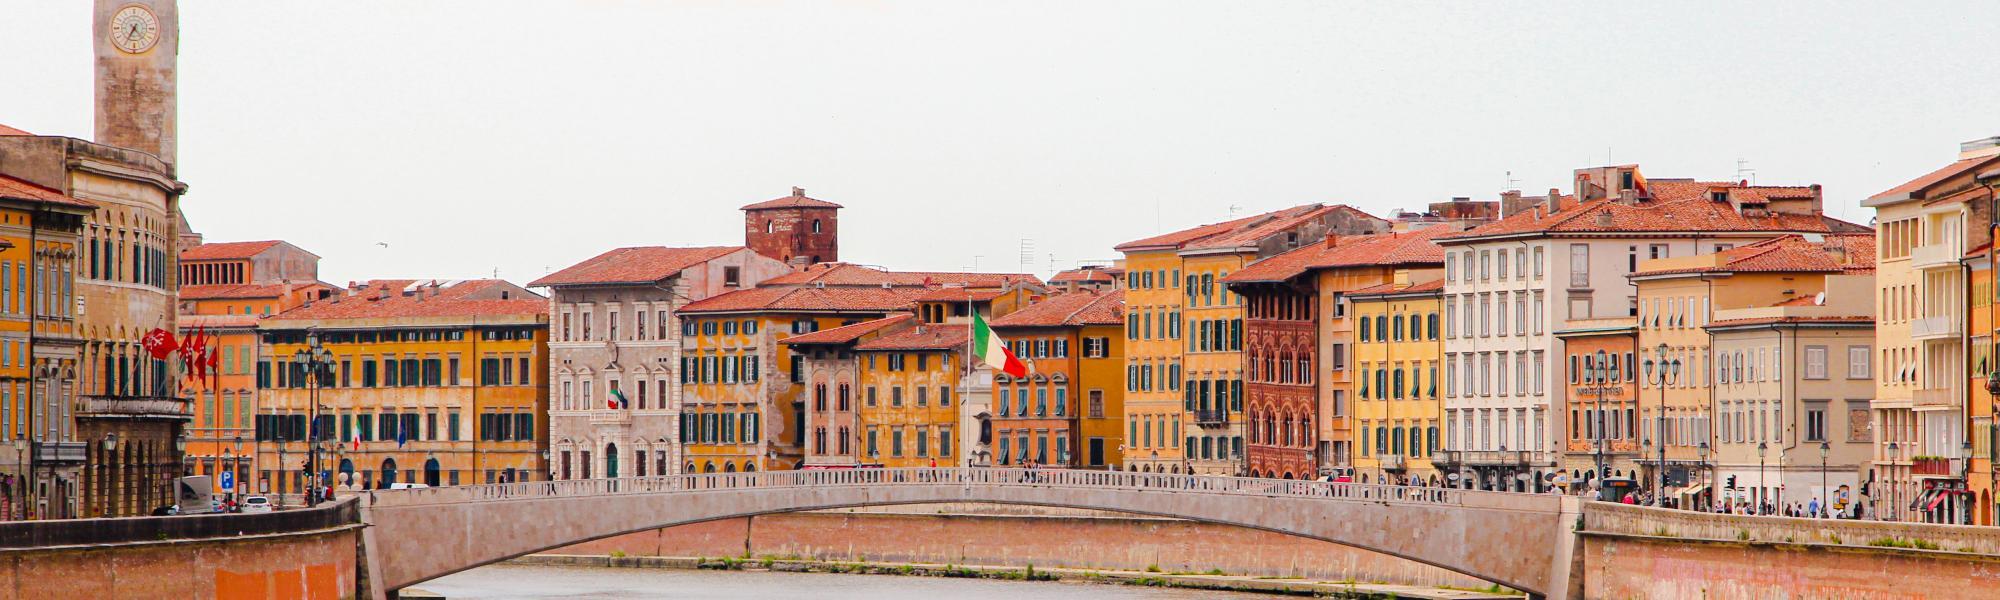 The Middle Bridge. Photo: Municipality of Pisa